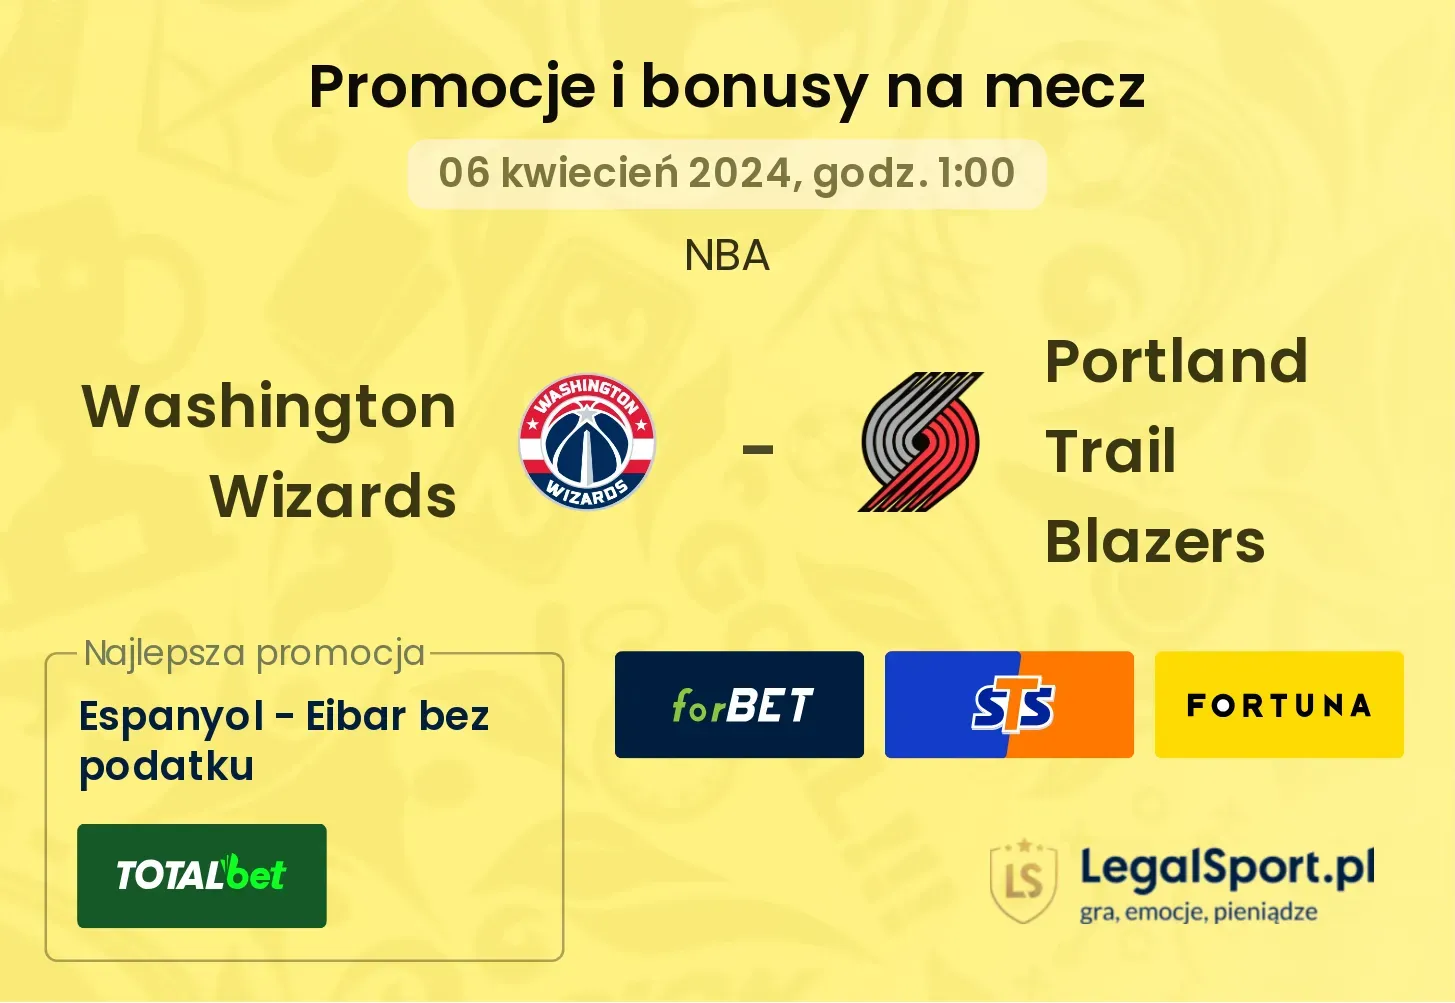 Washington Wizards - Portland Trail Blazers promocje bonusy na mecz